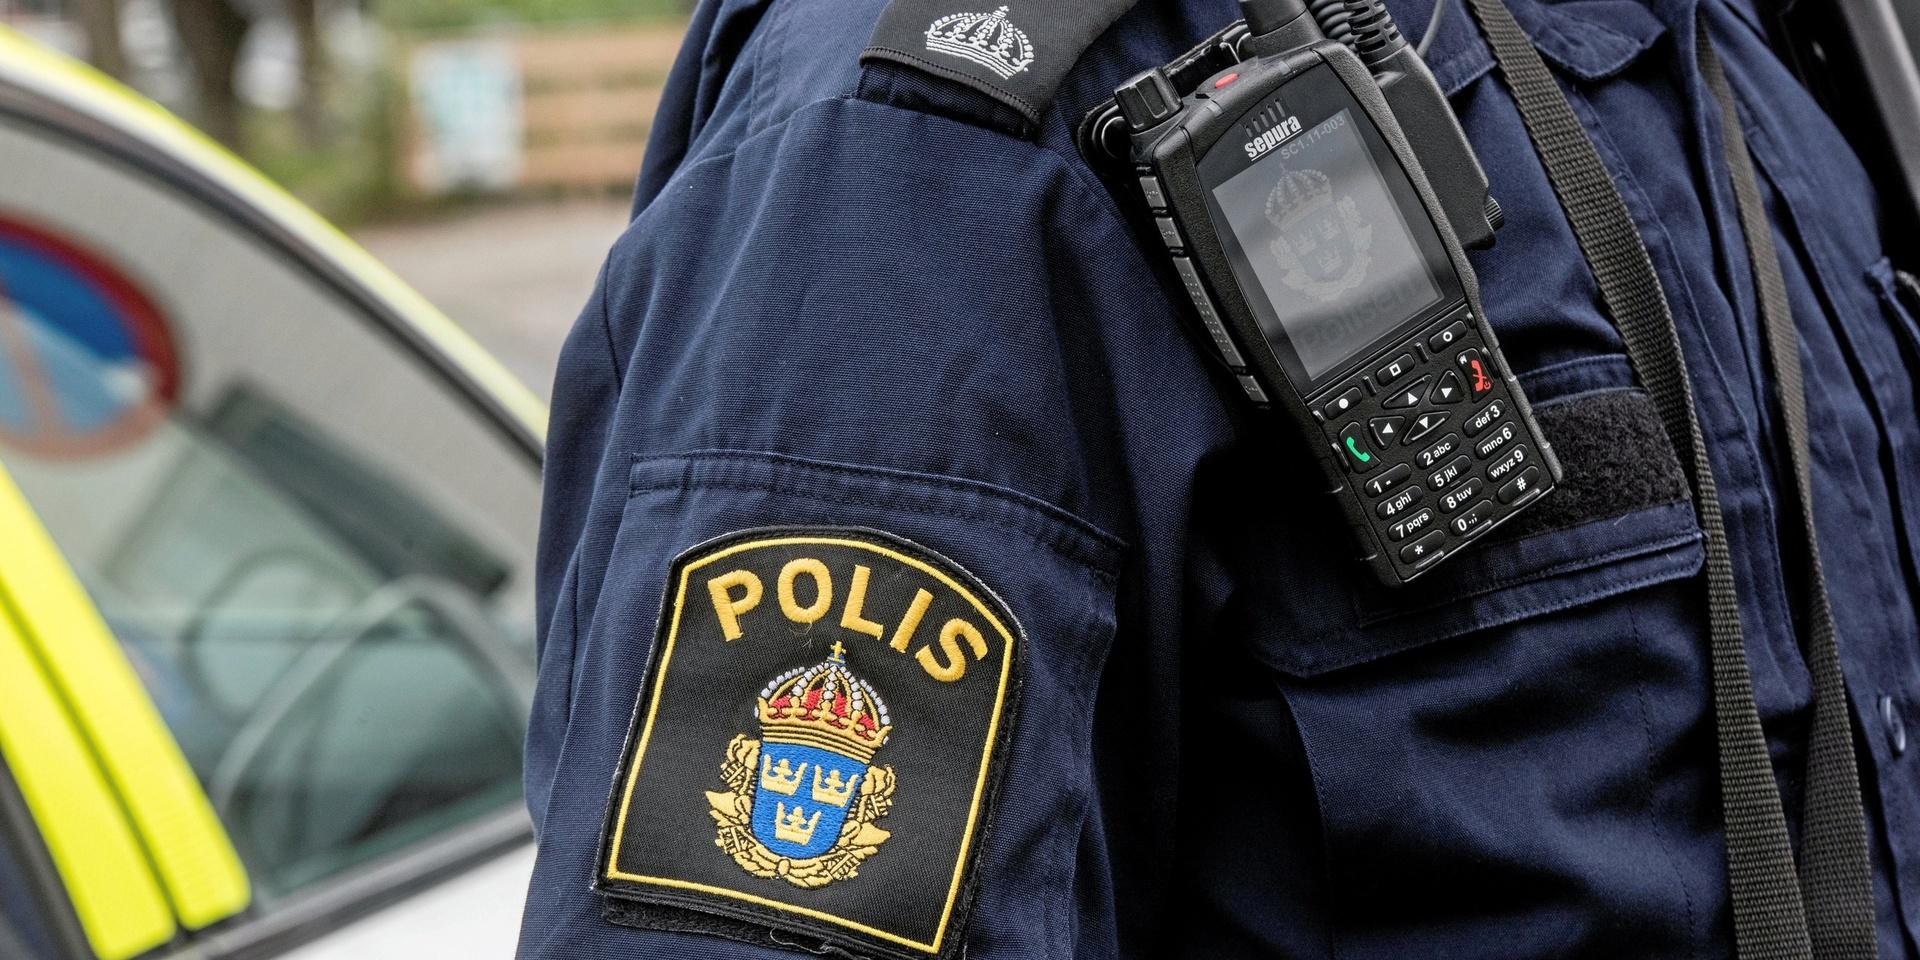 En man som varit efterlyst av polis hittades på en busshållplats i Hällesåker på måndagsmorgonen – med amfetamin i snusdosan.